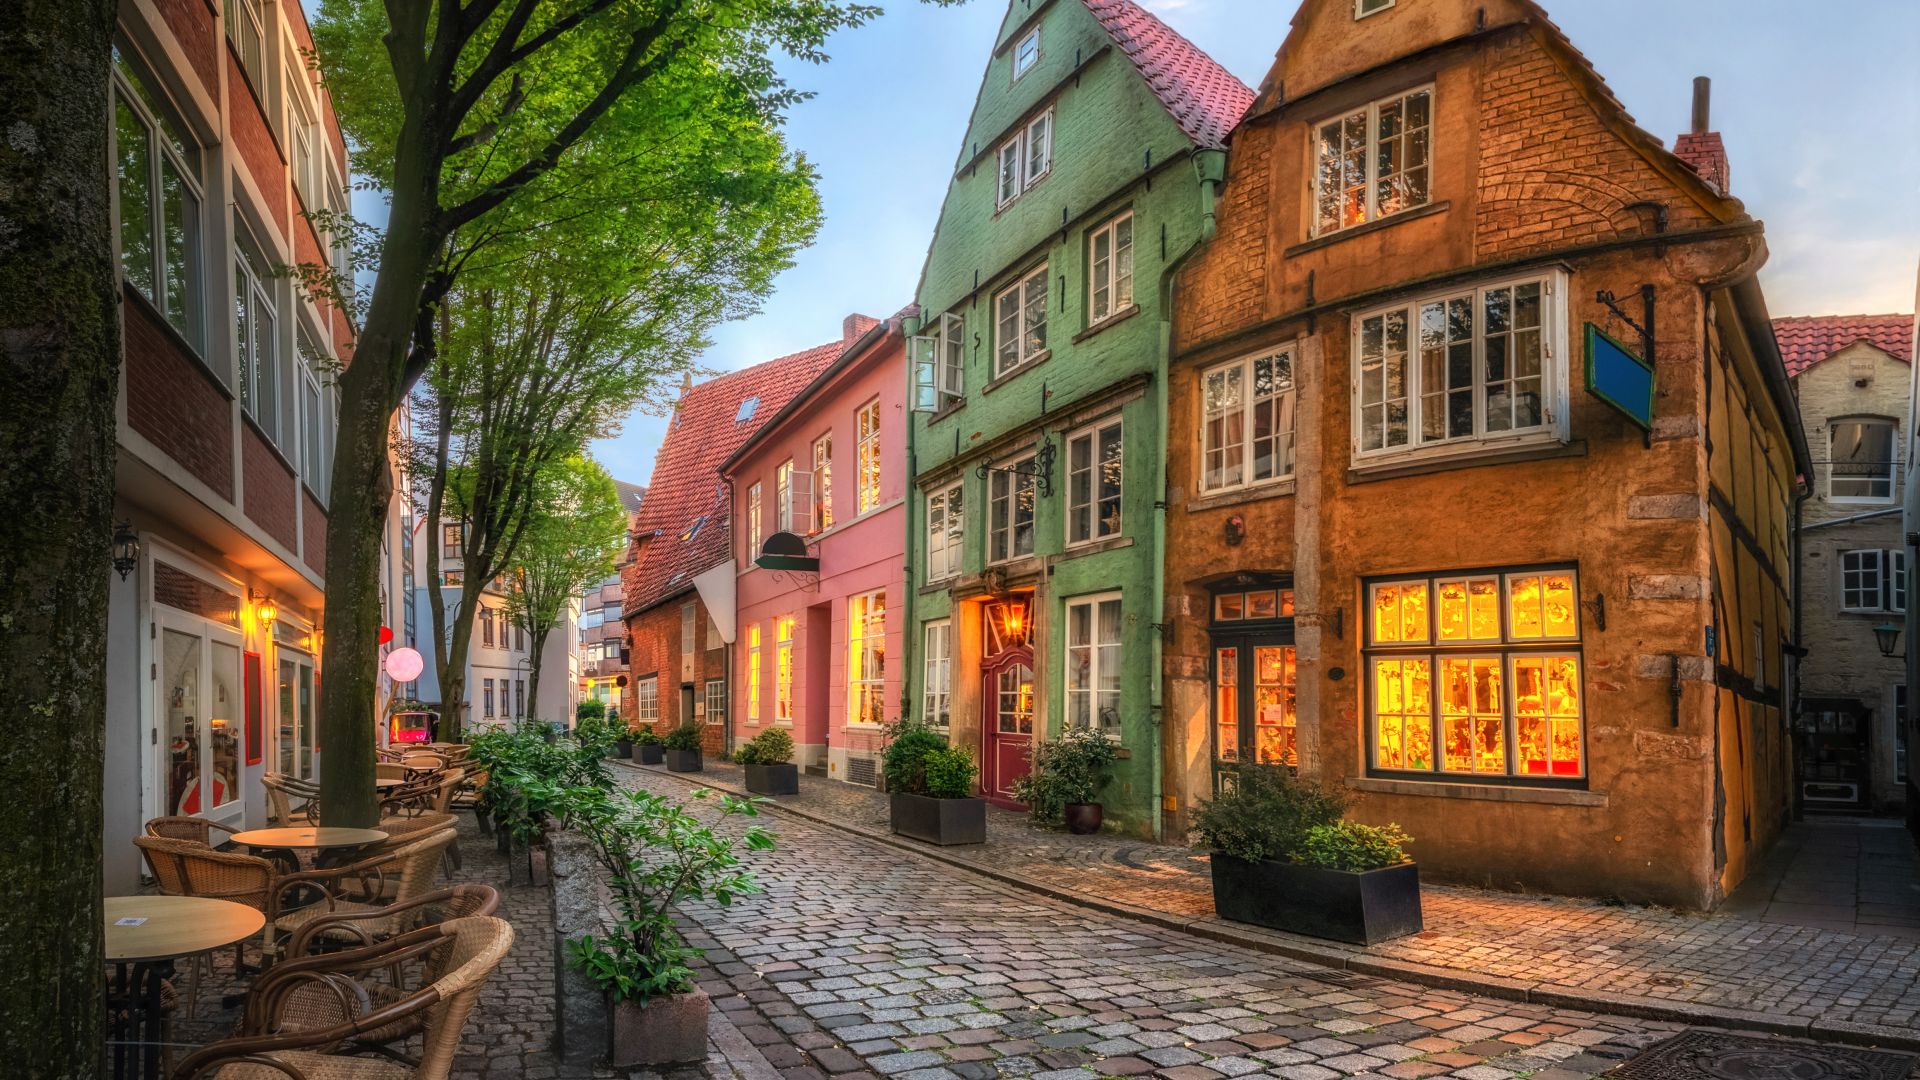 Bremen: historic Schnoor district, picturesque old town